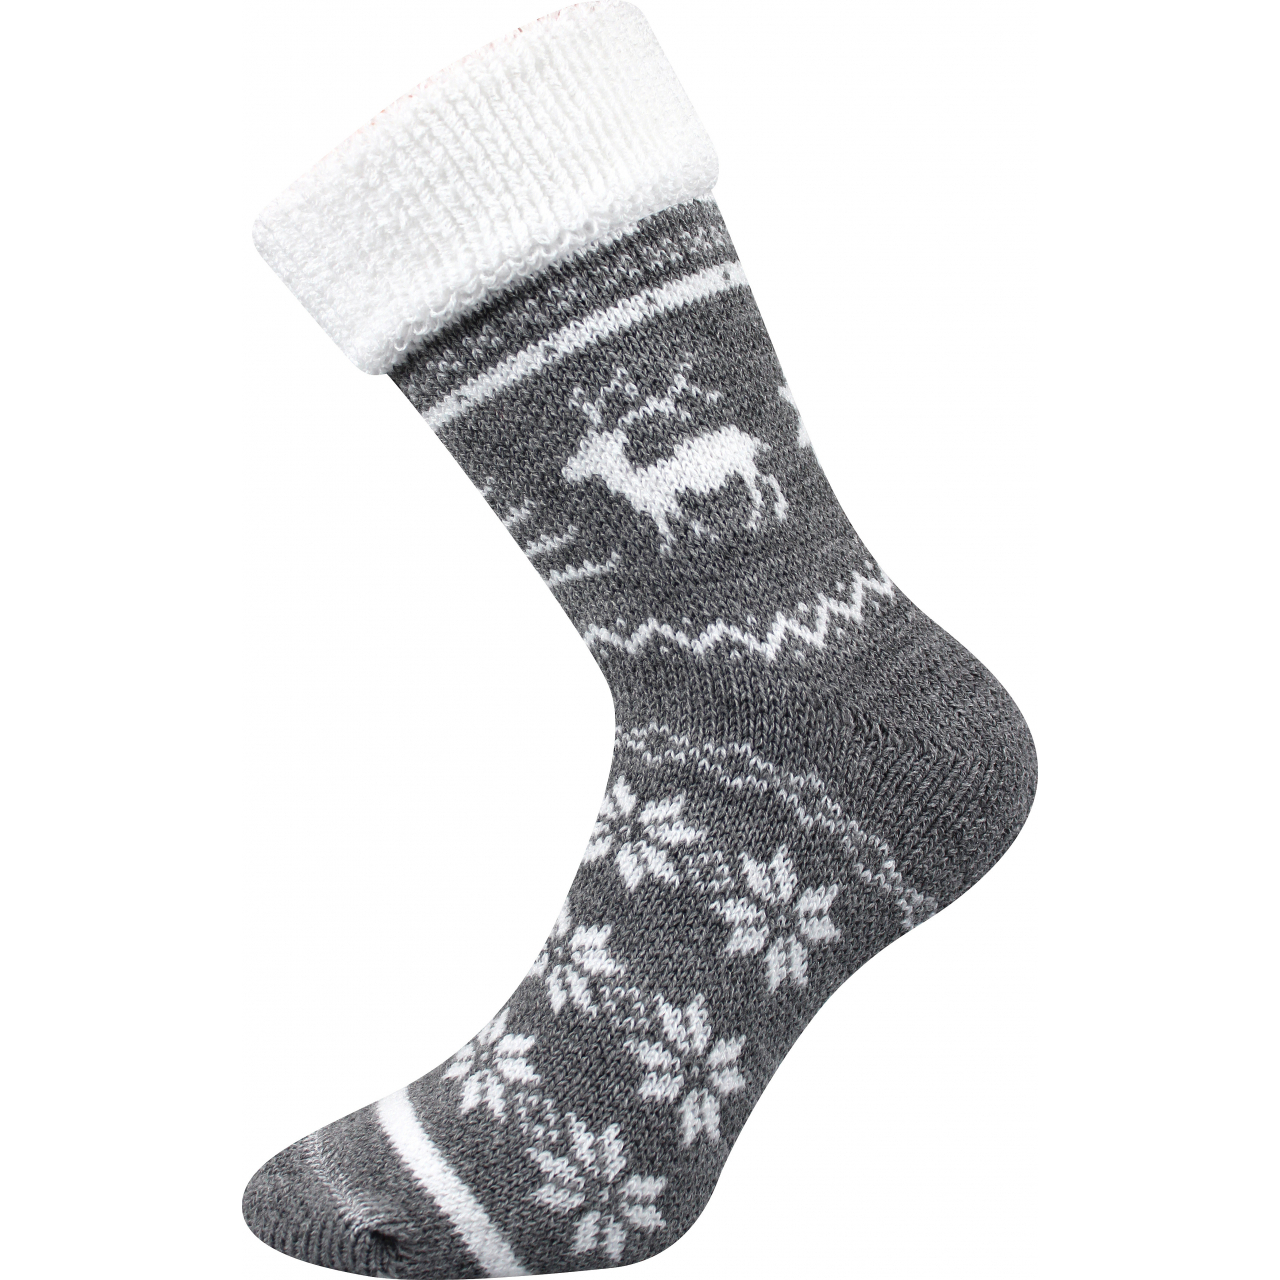 Ponožky termo unisex Boma Norway - šedé-bílé, 43-46